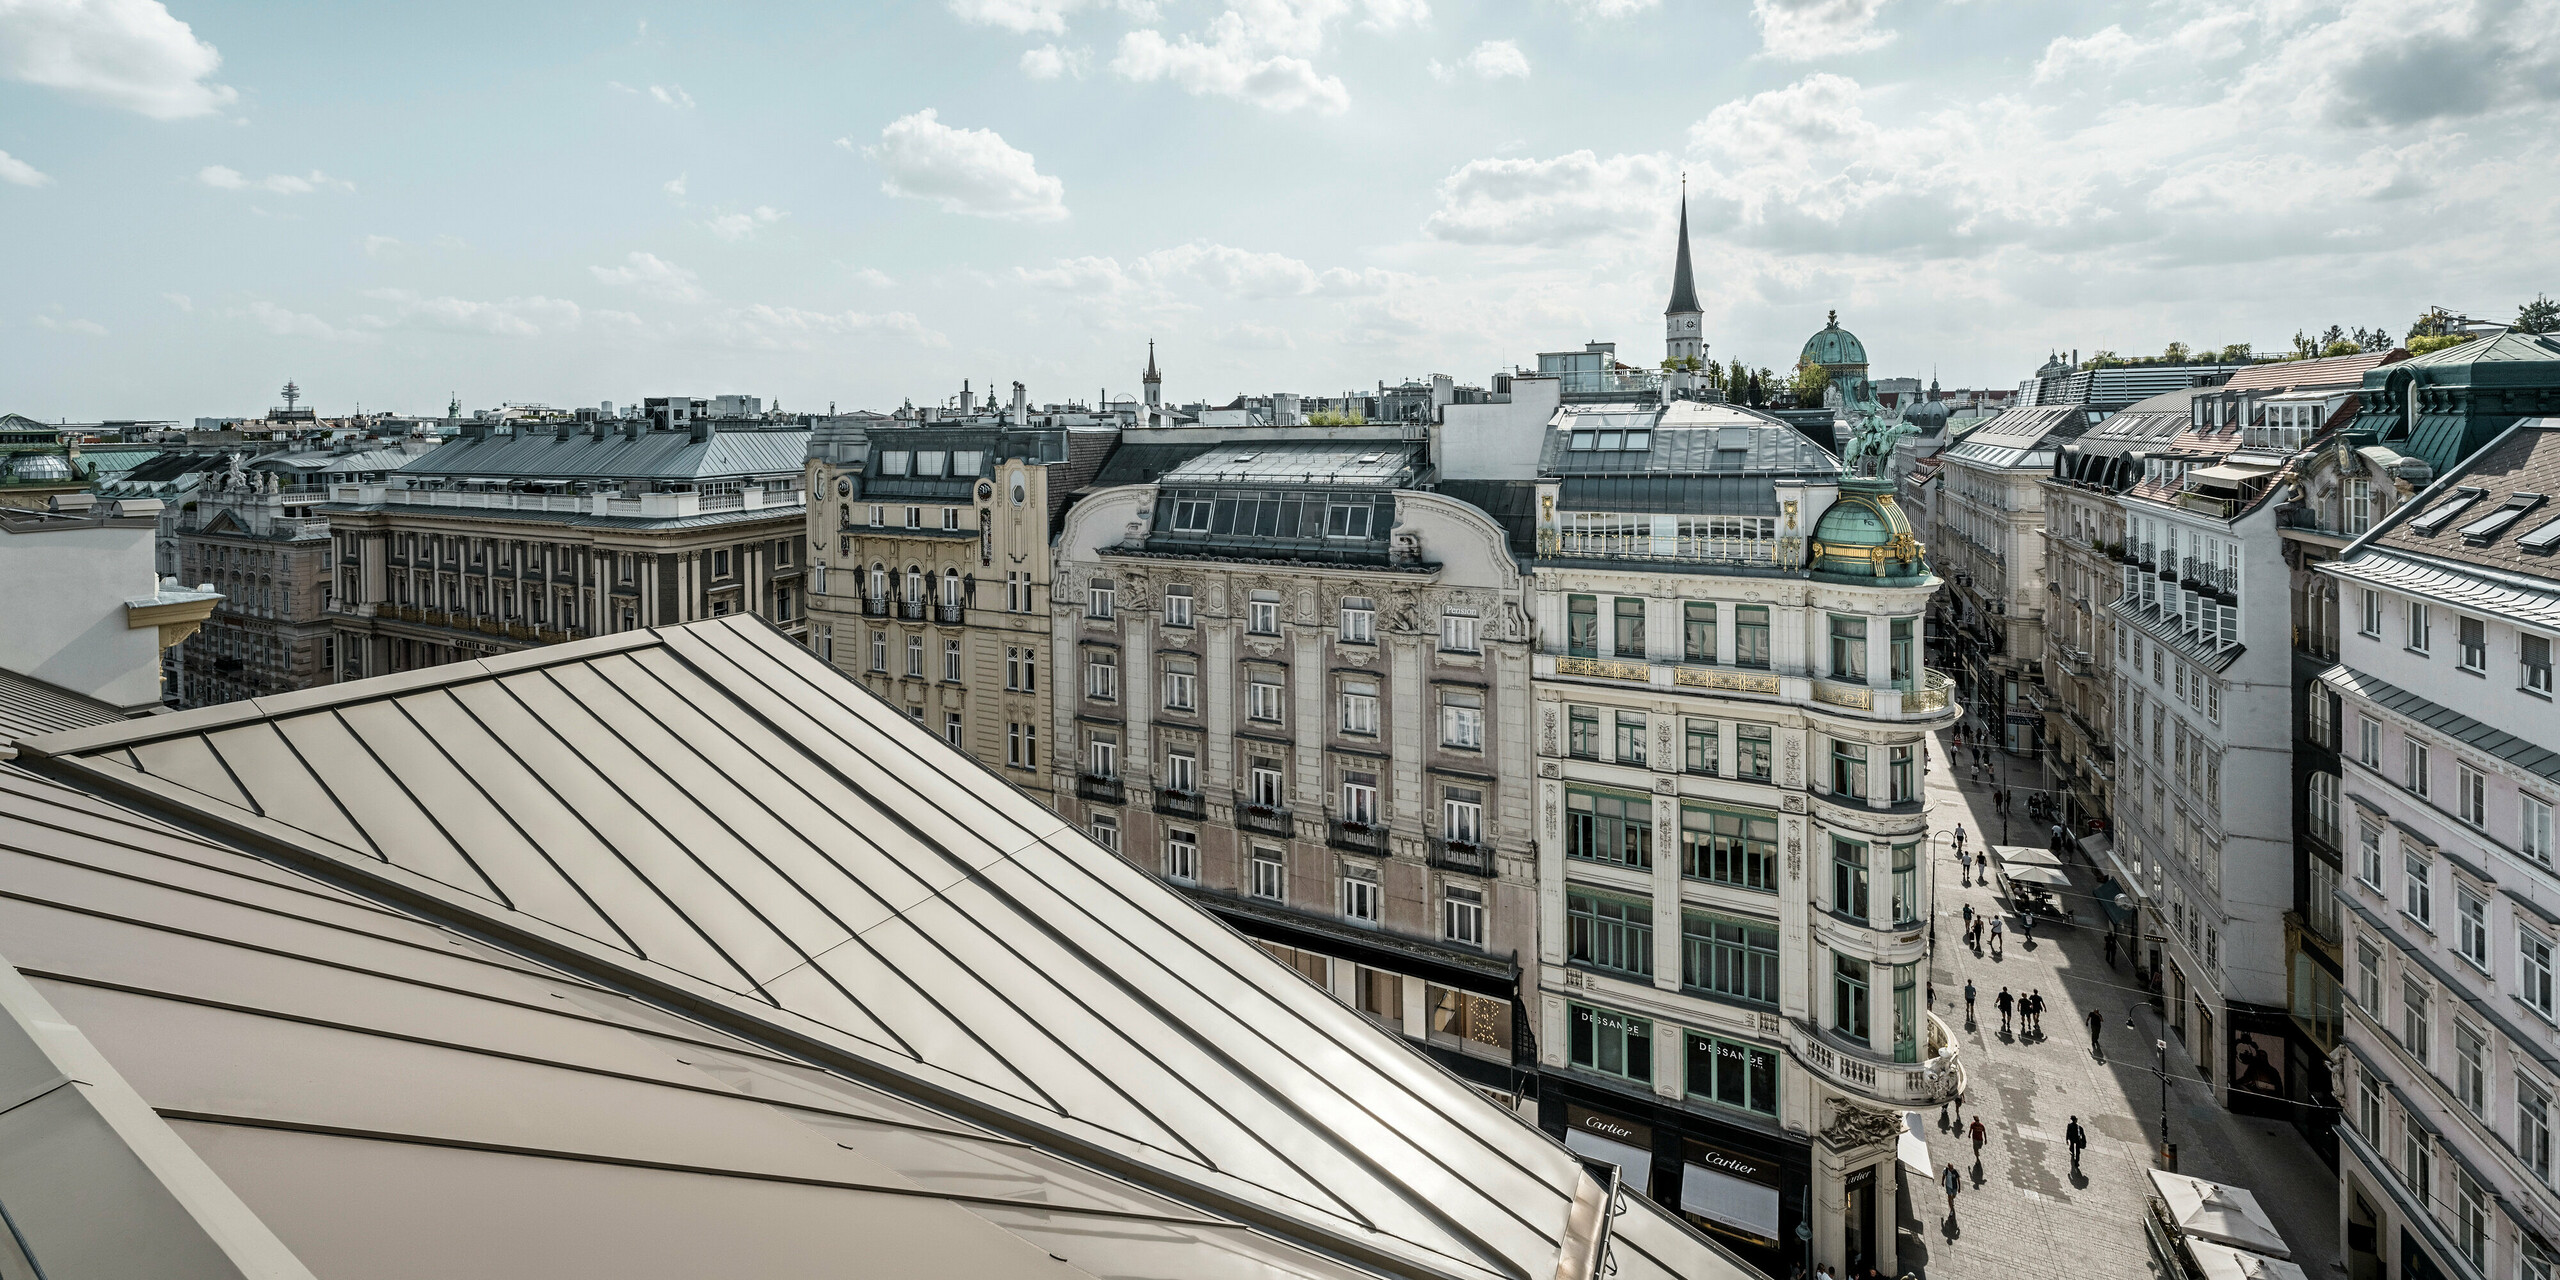 Weiter Blick auf die Dächer von Wien, links im Bild die Prefalz-Bahnen auf dem Rosewood Hotel Vienna im noblen Bronzeton.